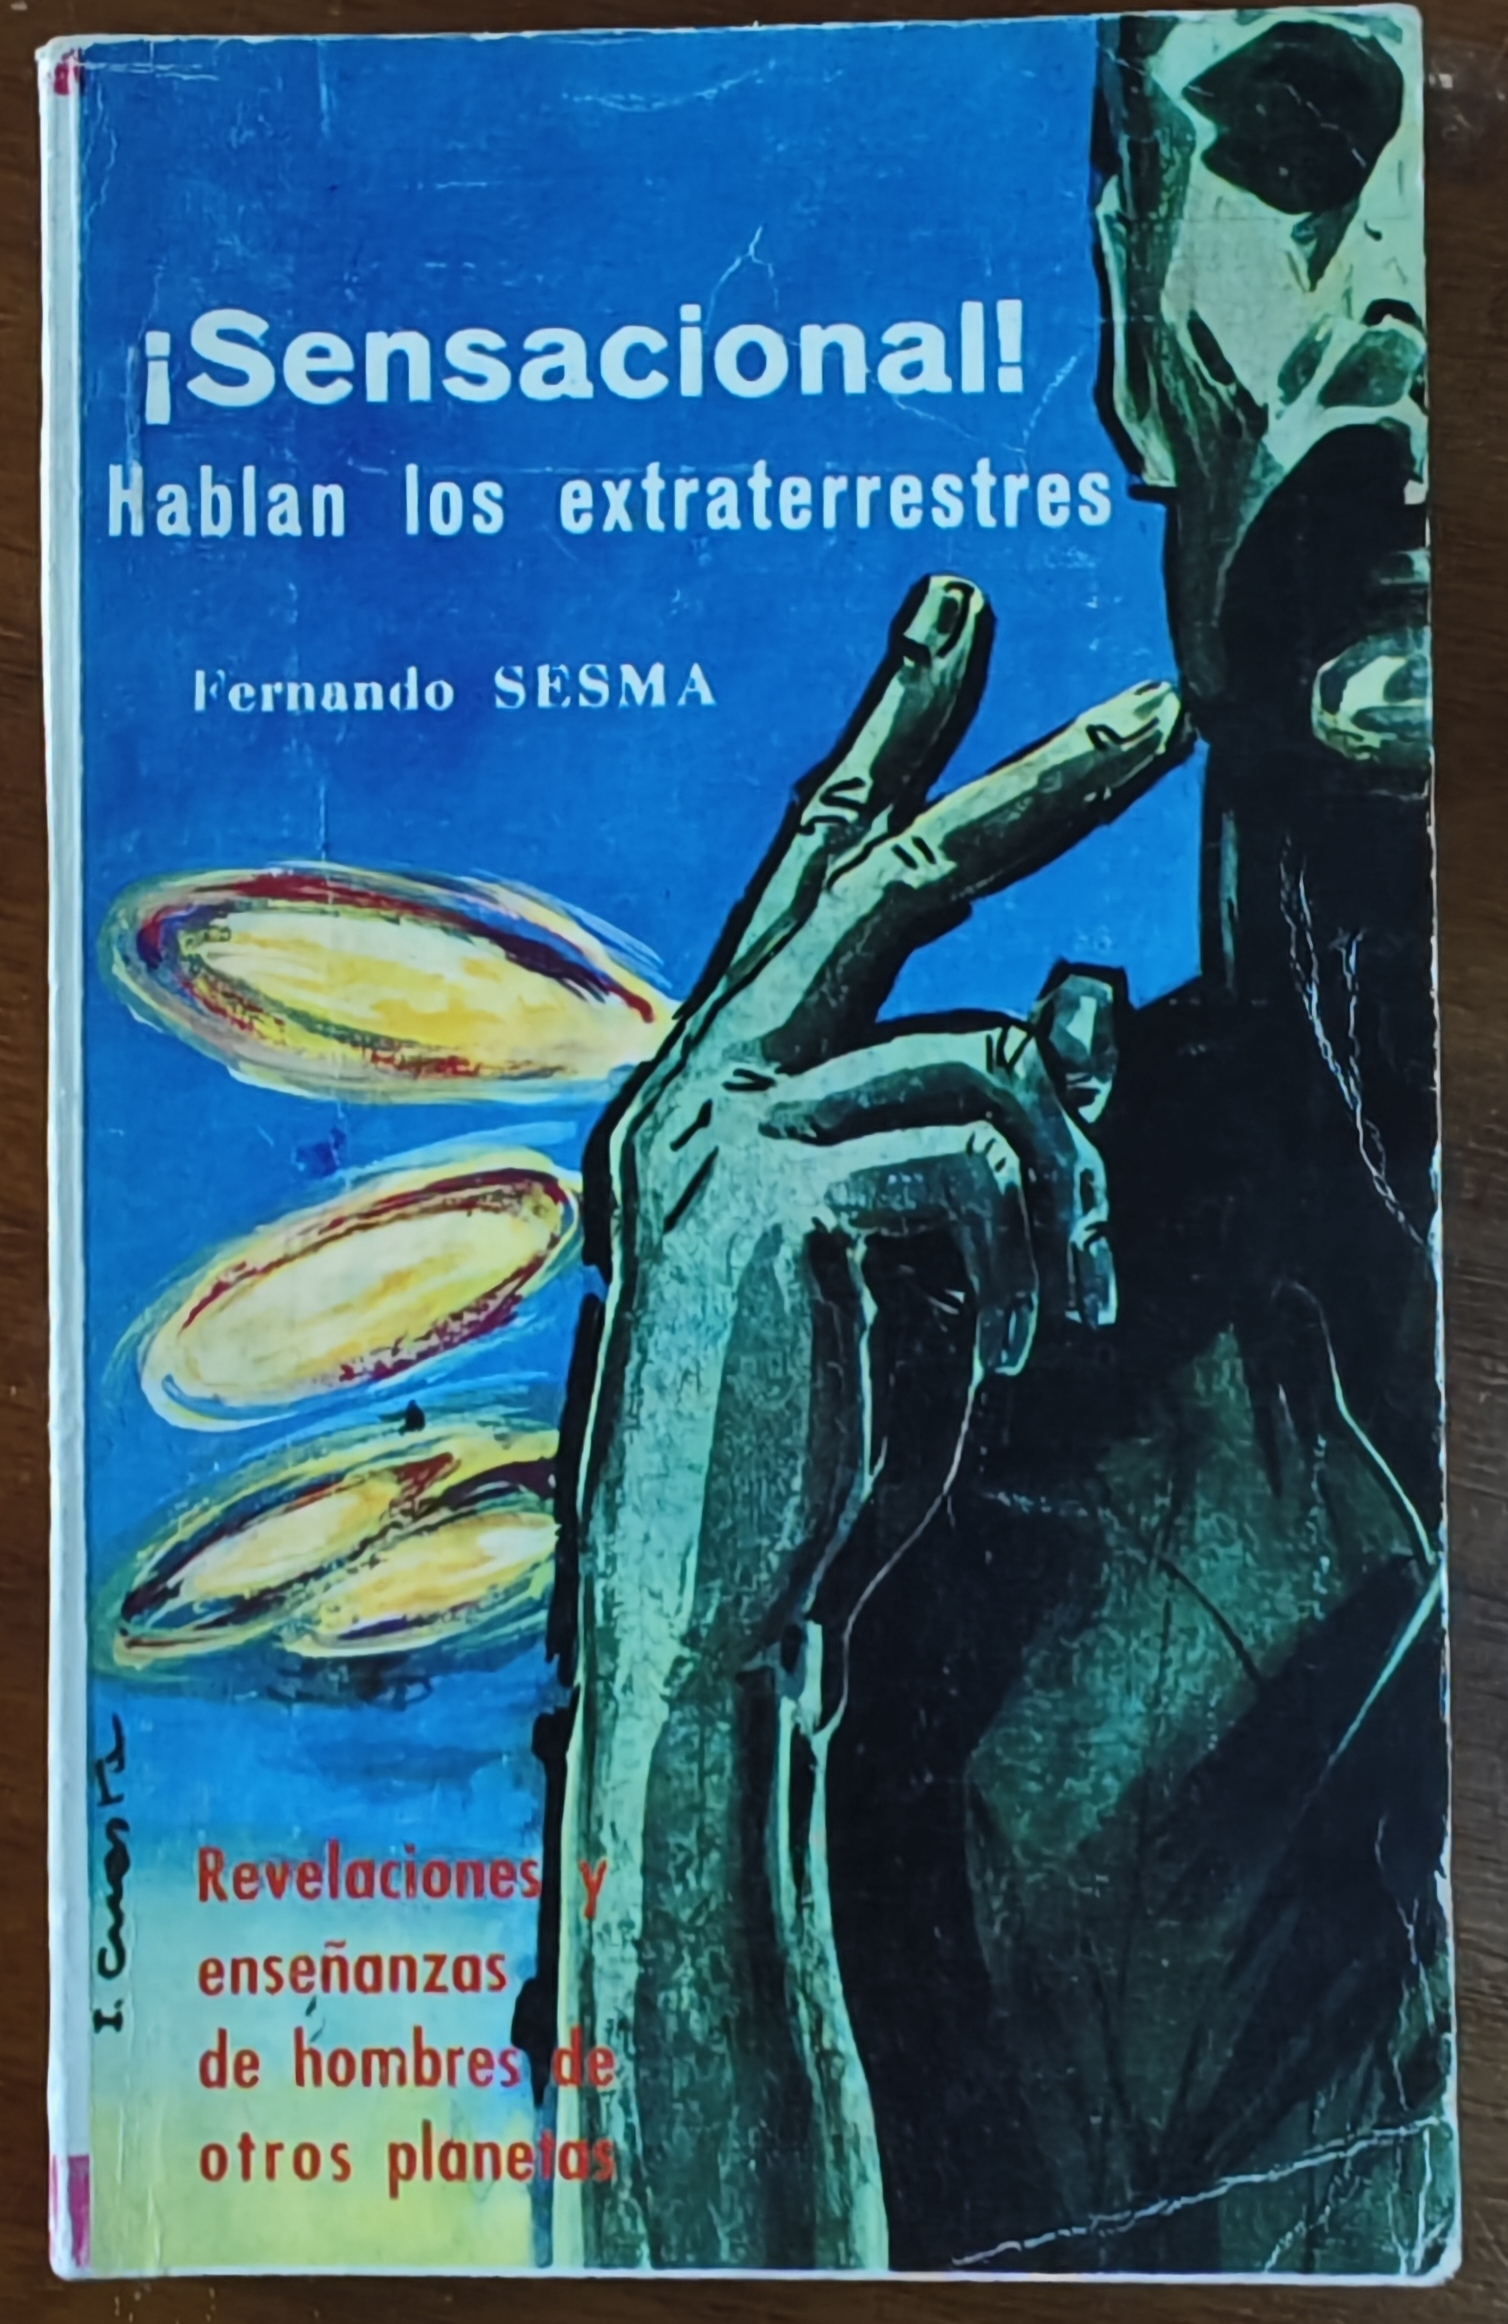 ¡Sensacional! Hablan los extraterrestres! di Fernando Sesma (Gráficas Espejo, 1966): caccia aperta!